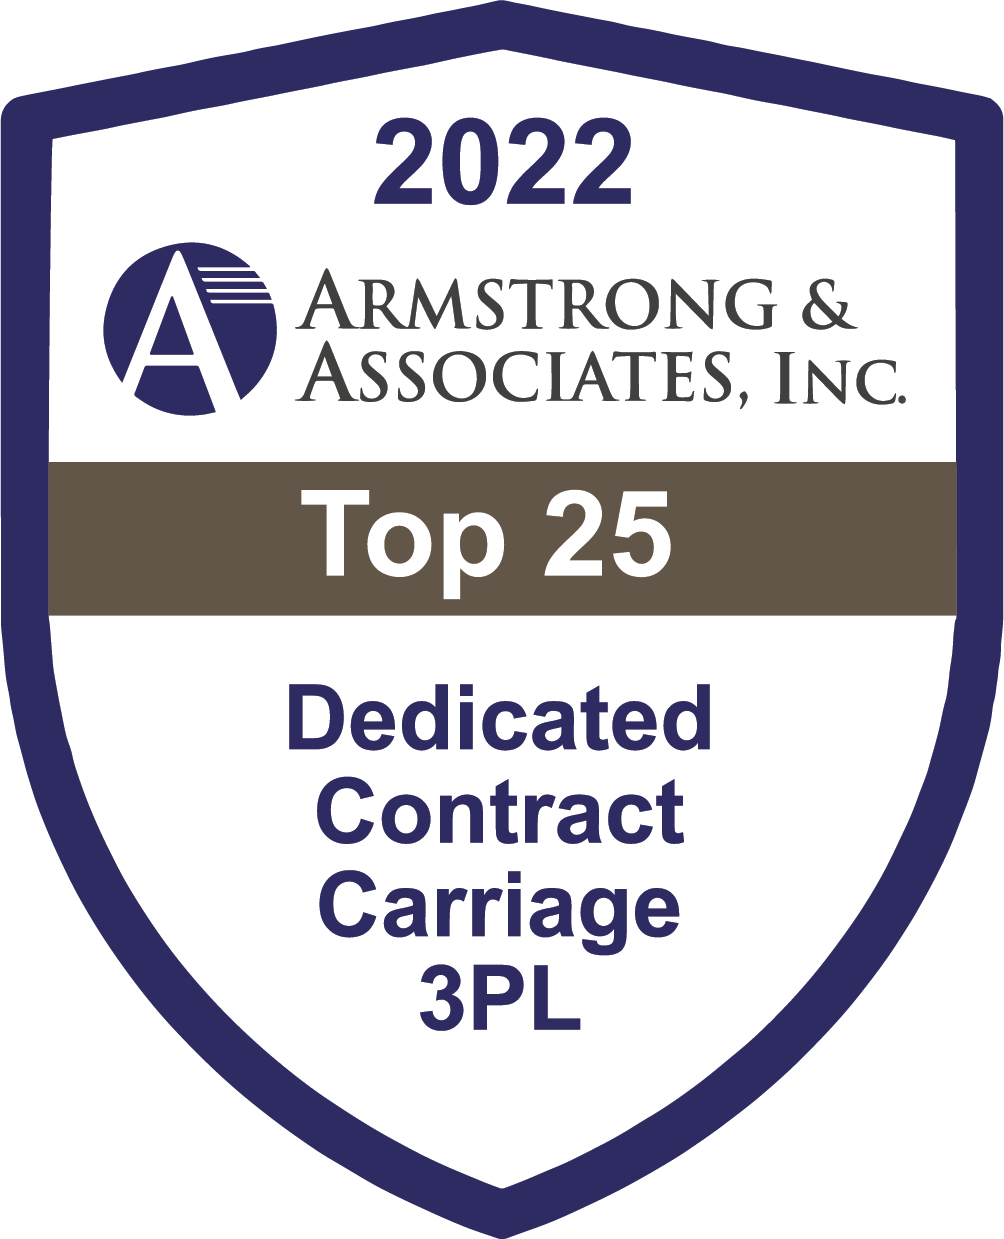 Armstrong & Associates Top 25 Dedicated Contract Carriage 3PL Award